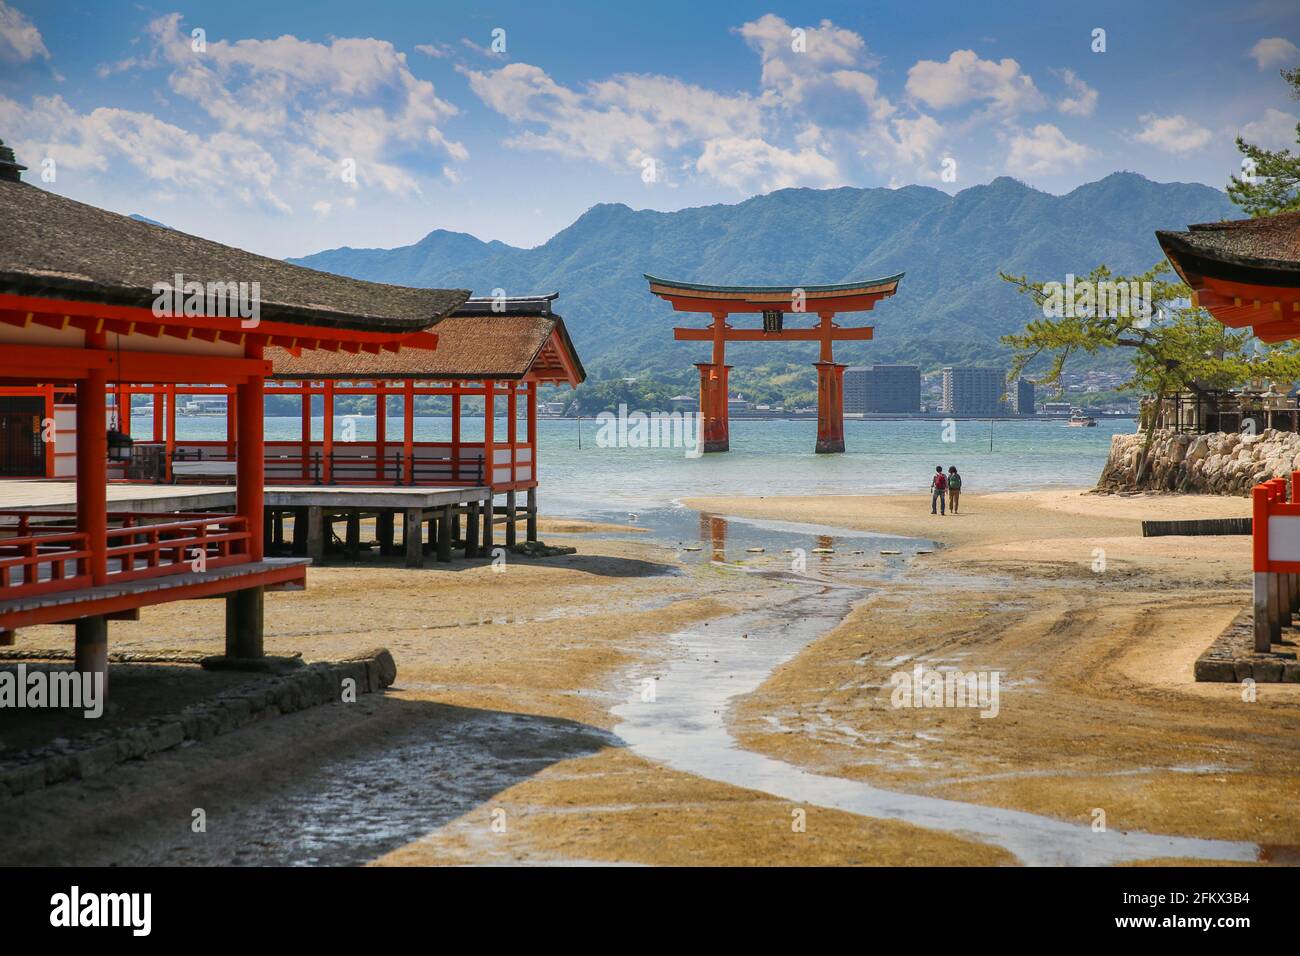 Itsukushima Floating Torii Gate. Passeggiata romantica sulla spiaggia per una coppia all'antico Santuario giapponese Shinto sull'isola di Miyajima, Hiroshima, Giappone. Foto Stock